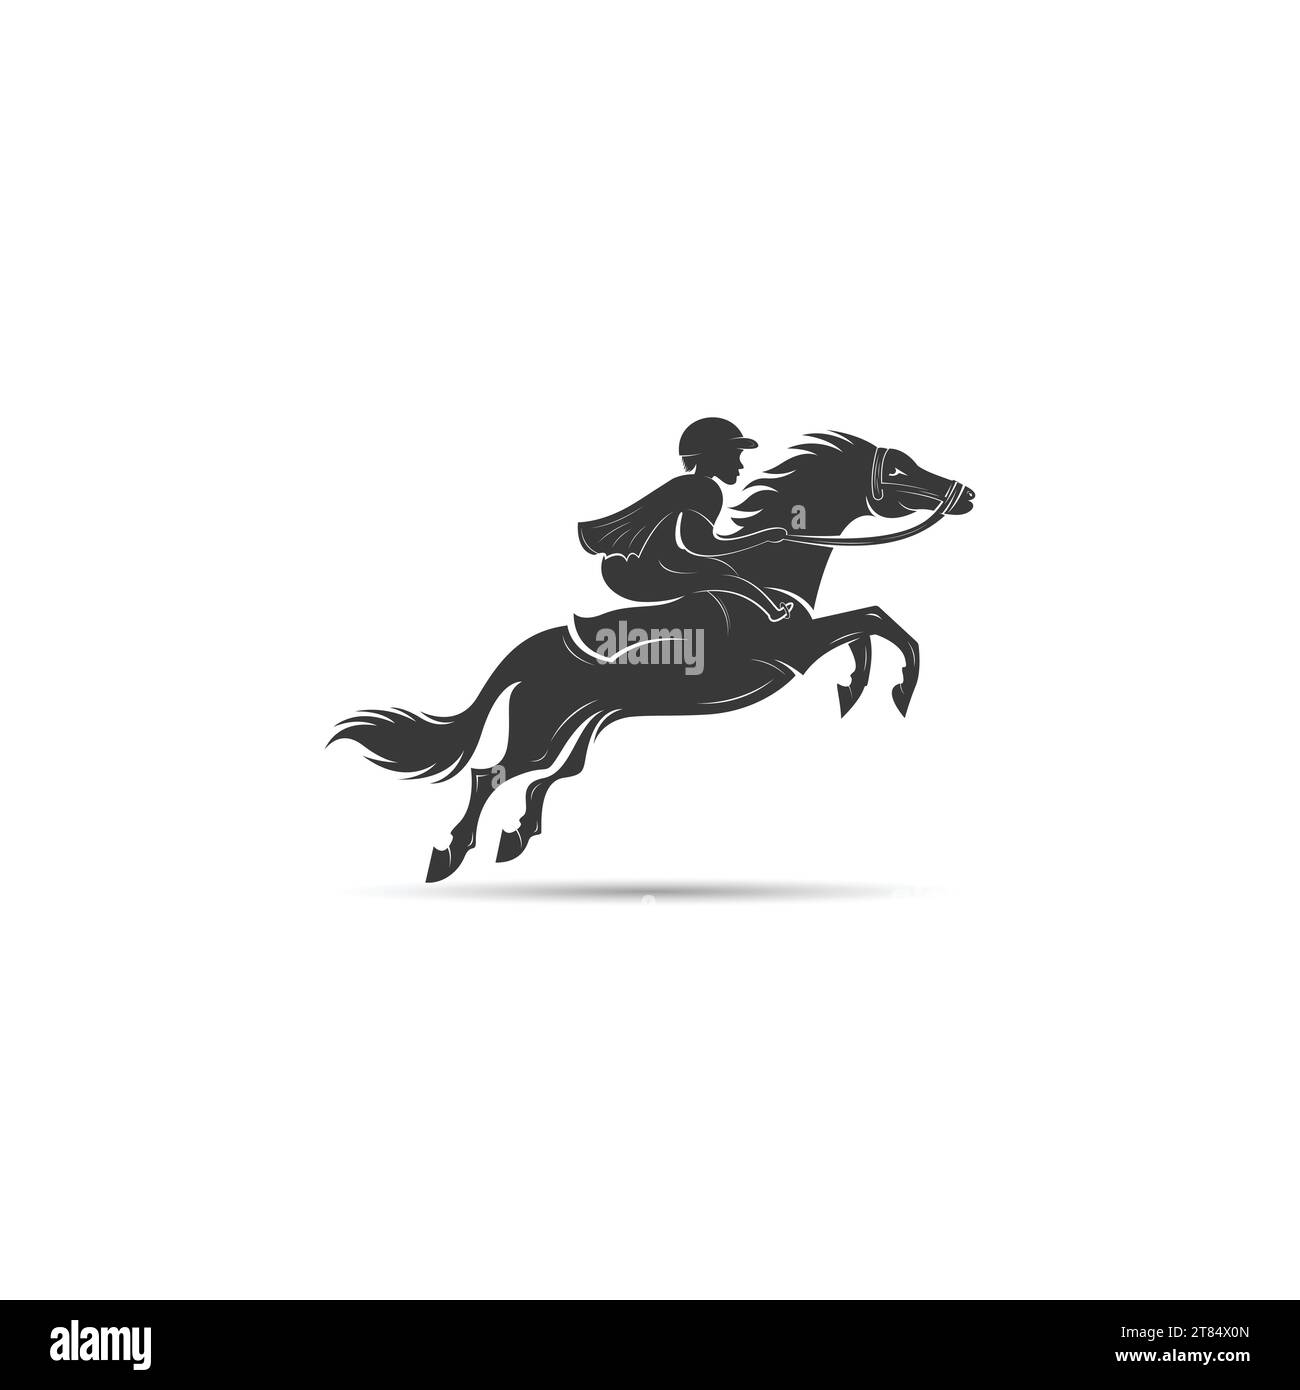 Animal horse logo vector design template Stock Vector